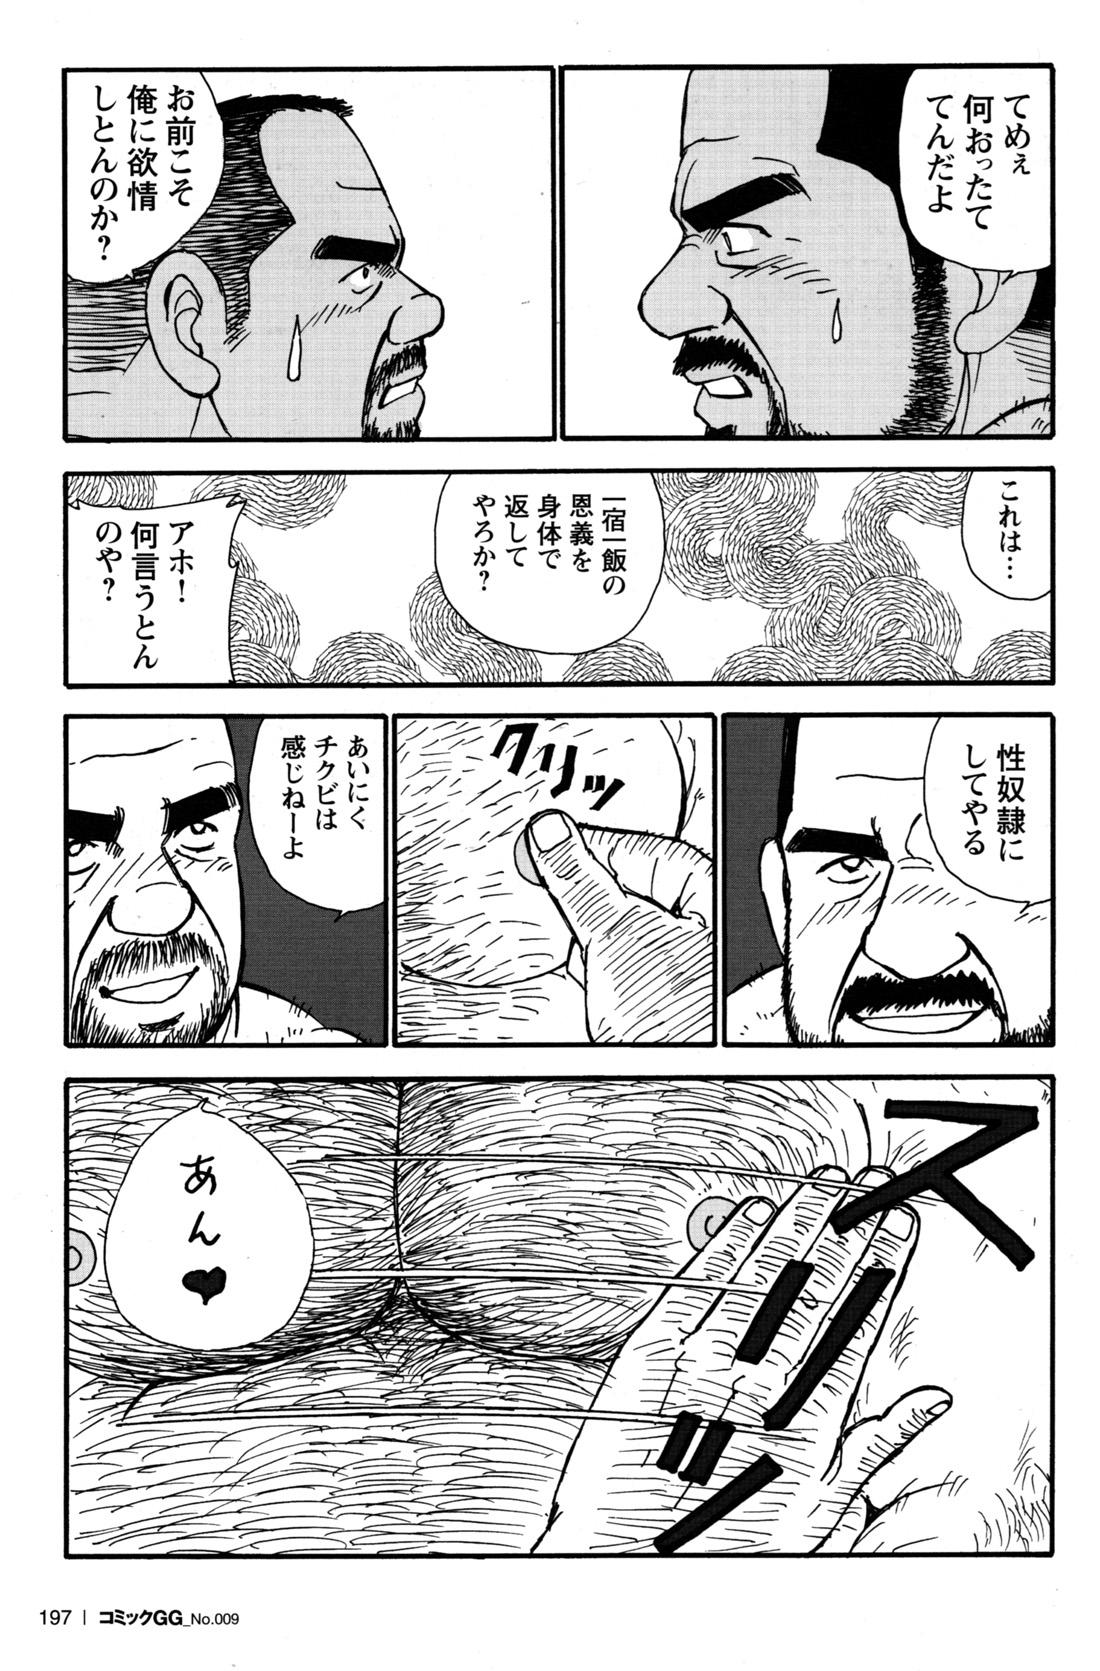 Comic G-men Gaho No.09 Gacchibi Zeme 180